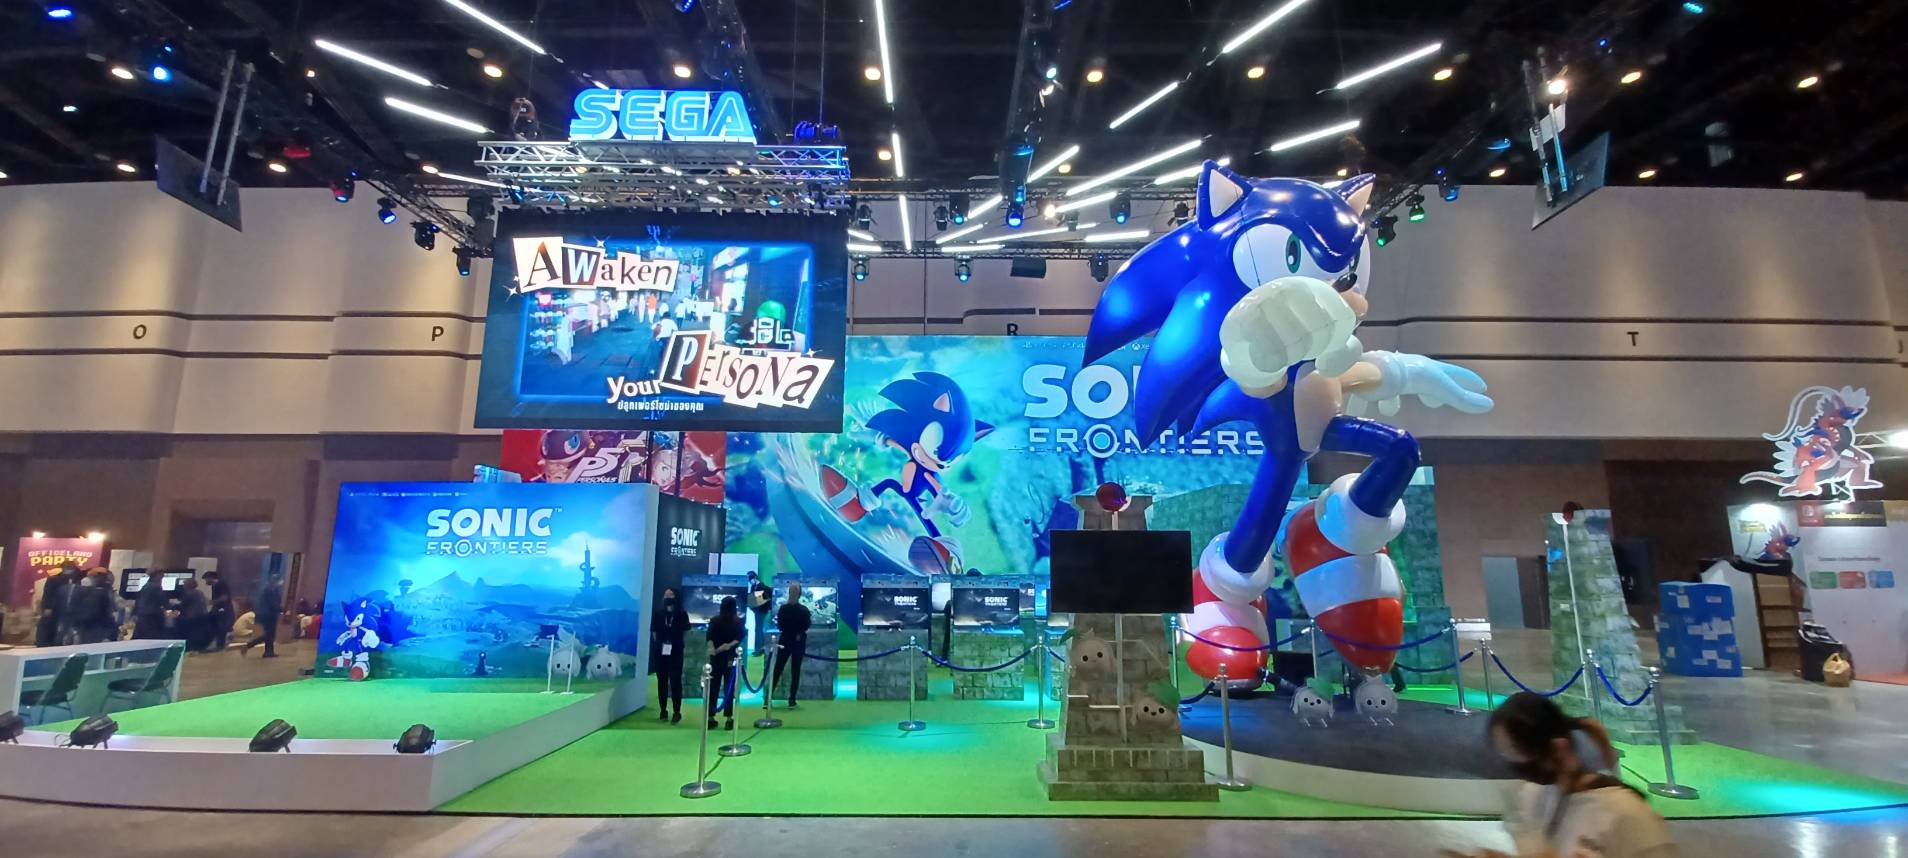 พาทัวร์บูธ SEGA ในงาน TGS 2022 พร้อมเกม ‘Sonic’ ภาคใหม่ ให้เล่นก่อนใคร